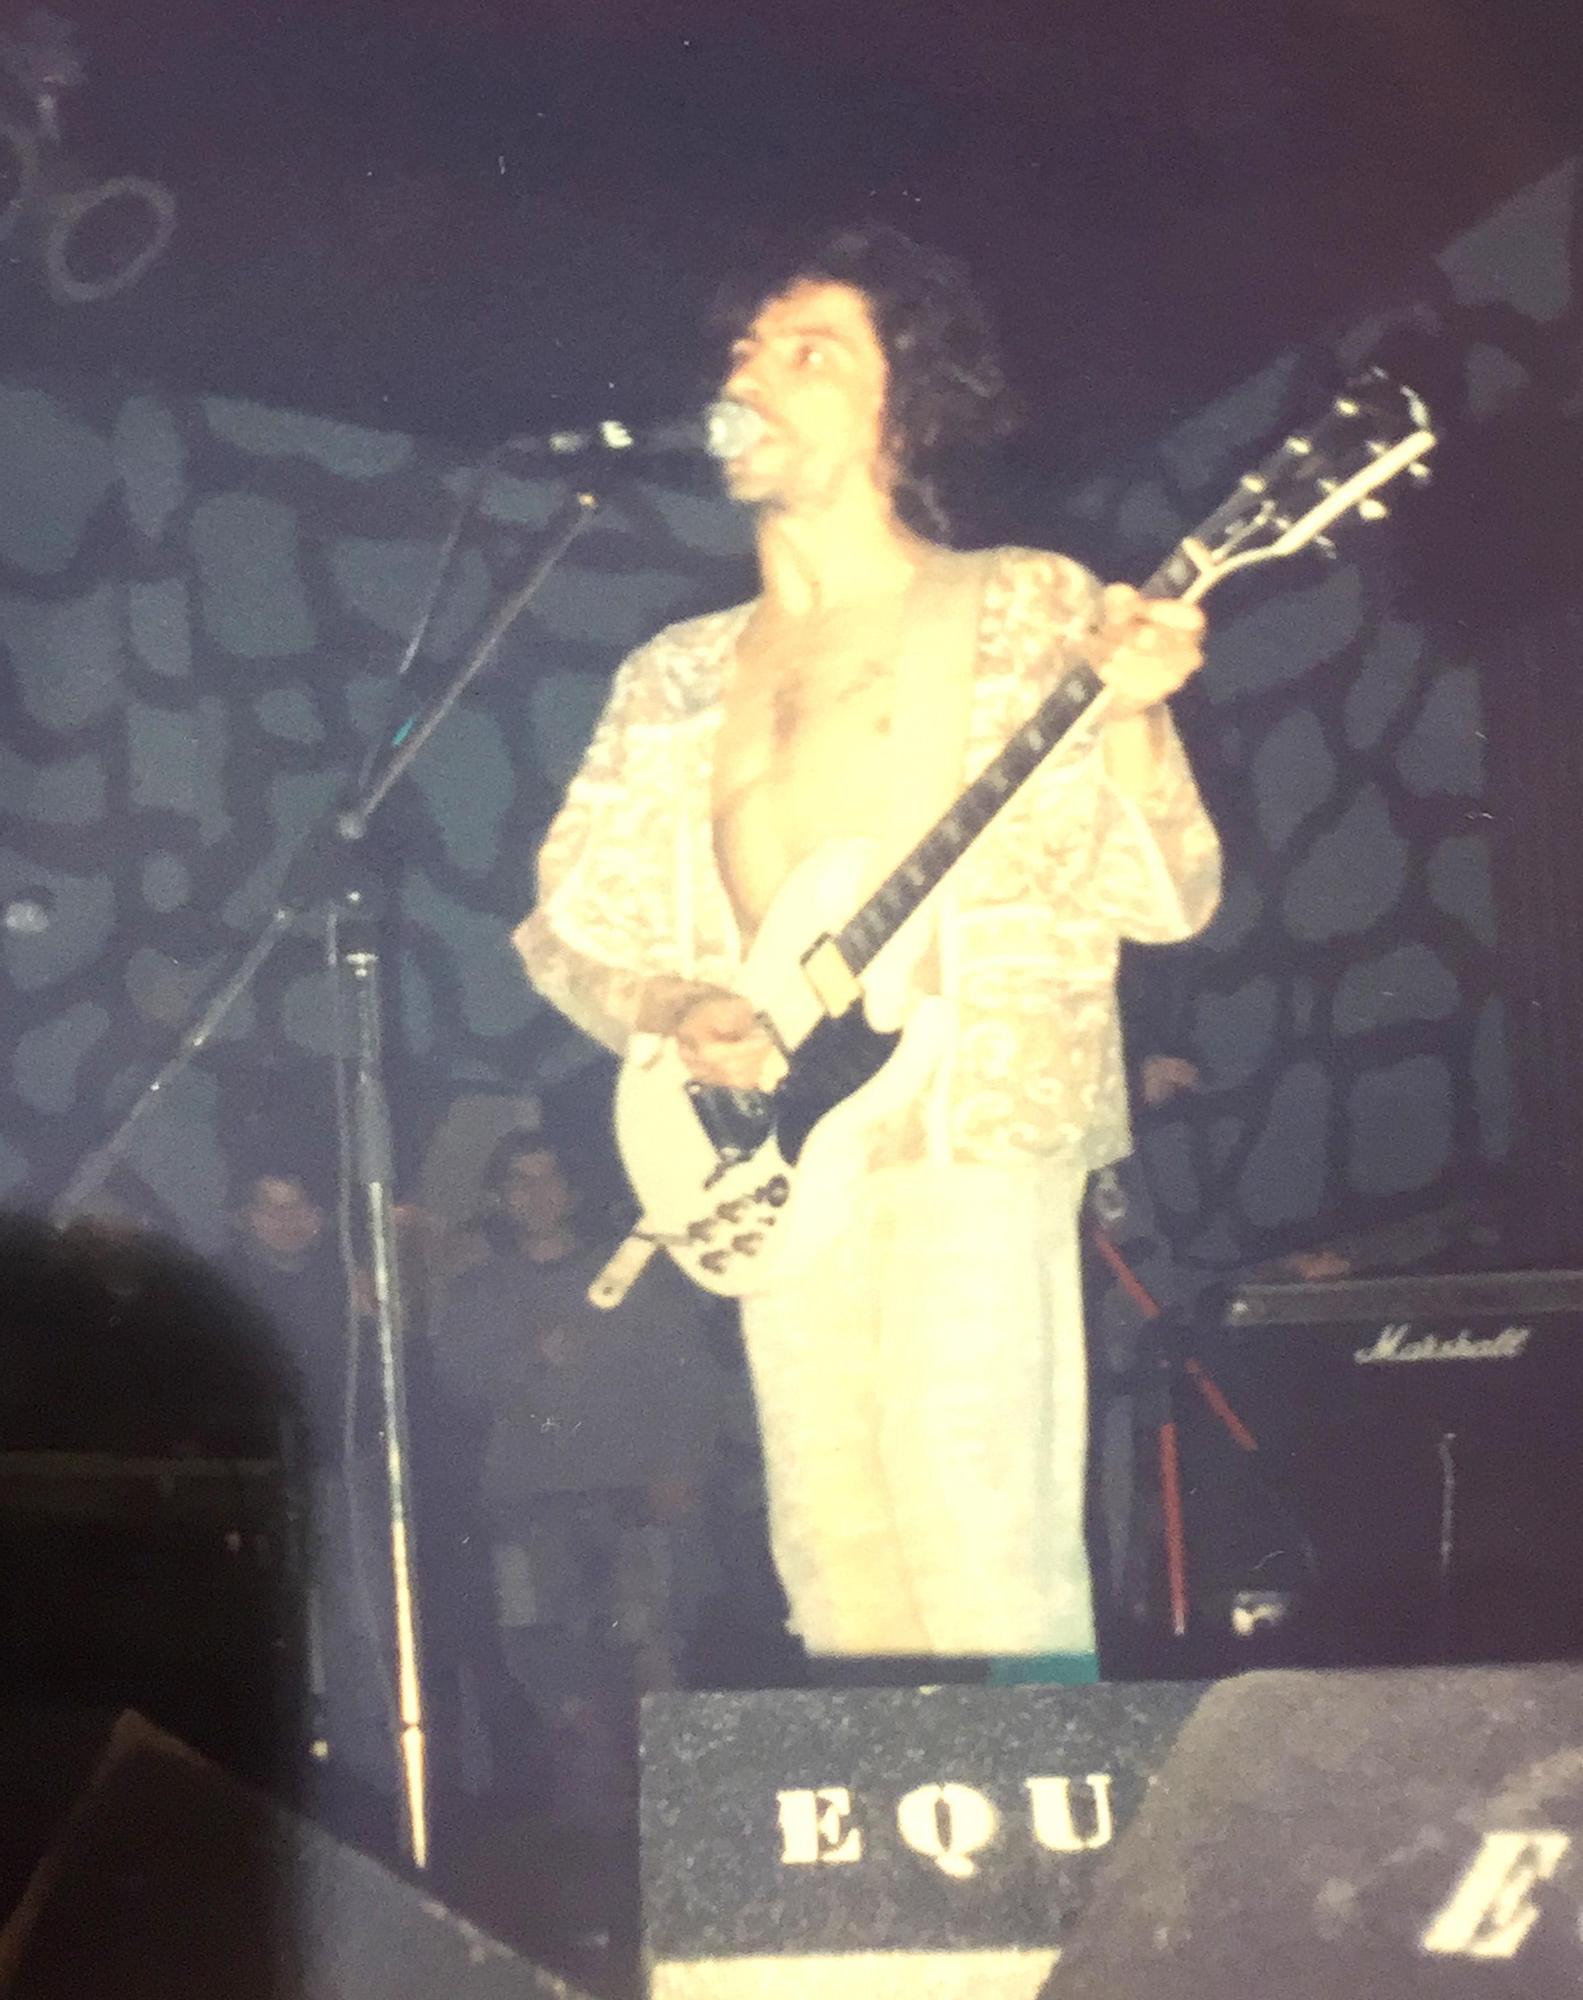 Imagen del concierto de Extremoduro en La Factoría, en febrero de 1992.